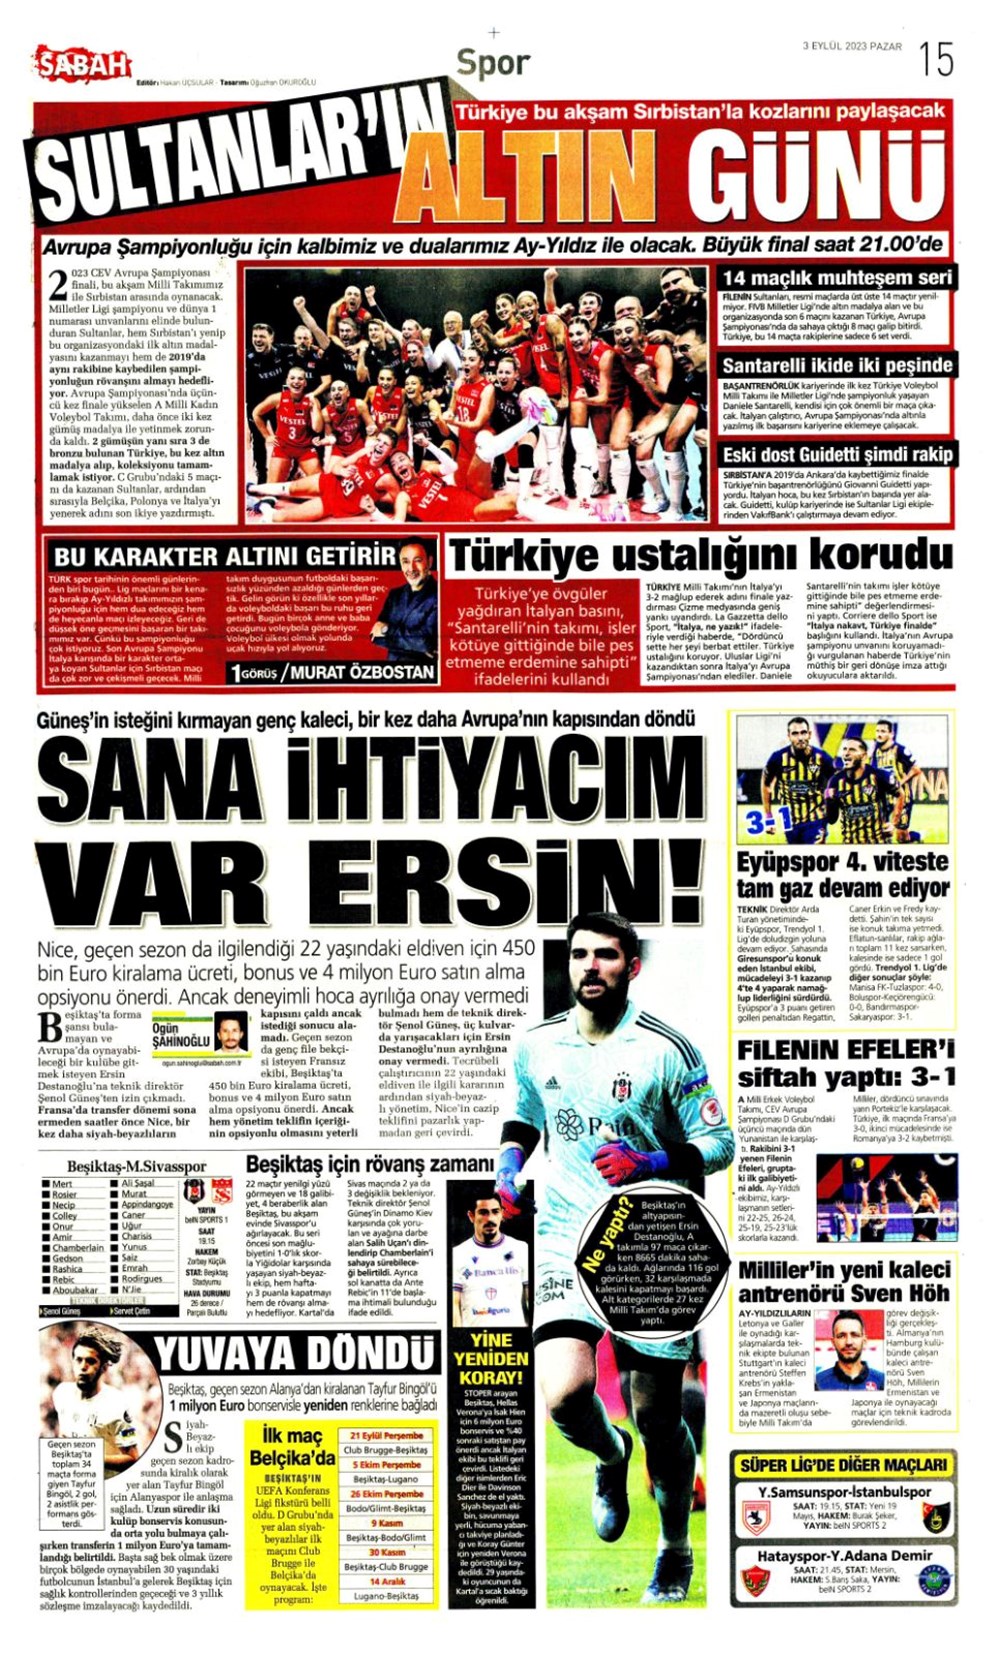 Fenerbahçe 3-2 Beşiktaş - Marmaris Manşet